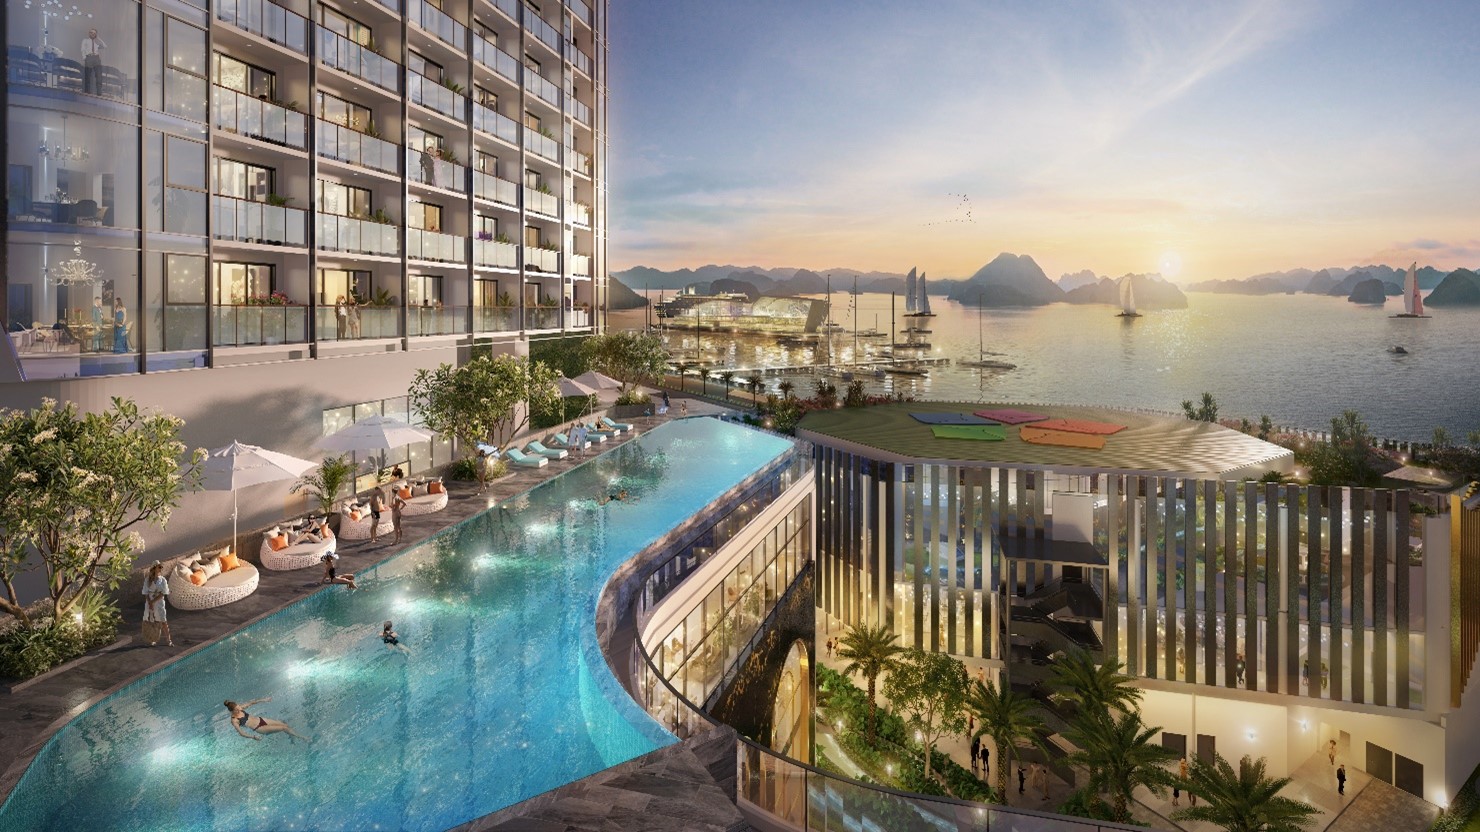 Resort Apartment: Căn Hộ Resort Đa Lợi Nhuận, Giá Trị Vững Bền Tại Đô Thị Du Lịch Mới Phía Đông Quảng Ninh